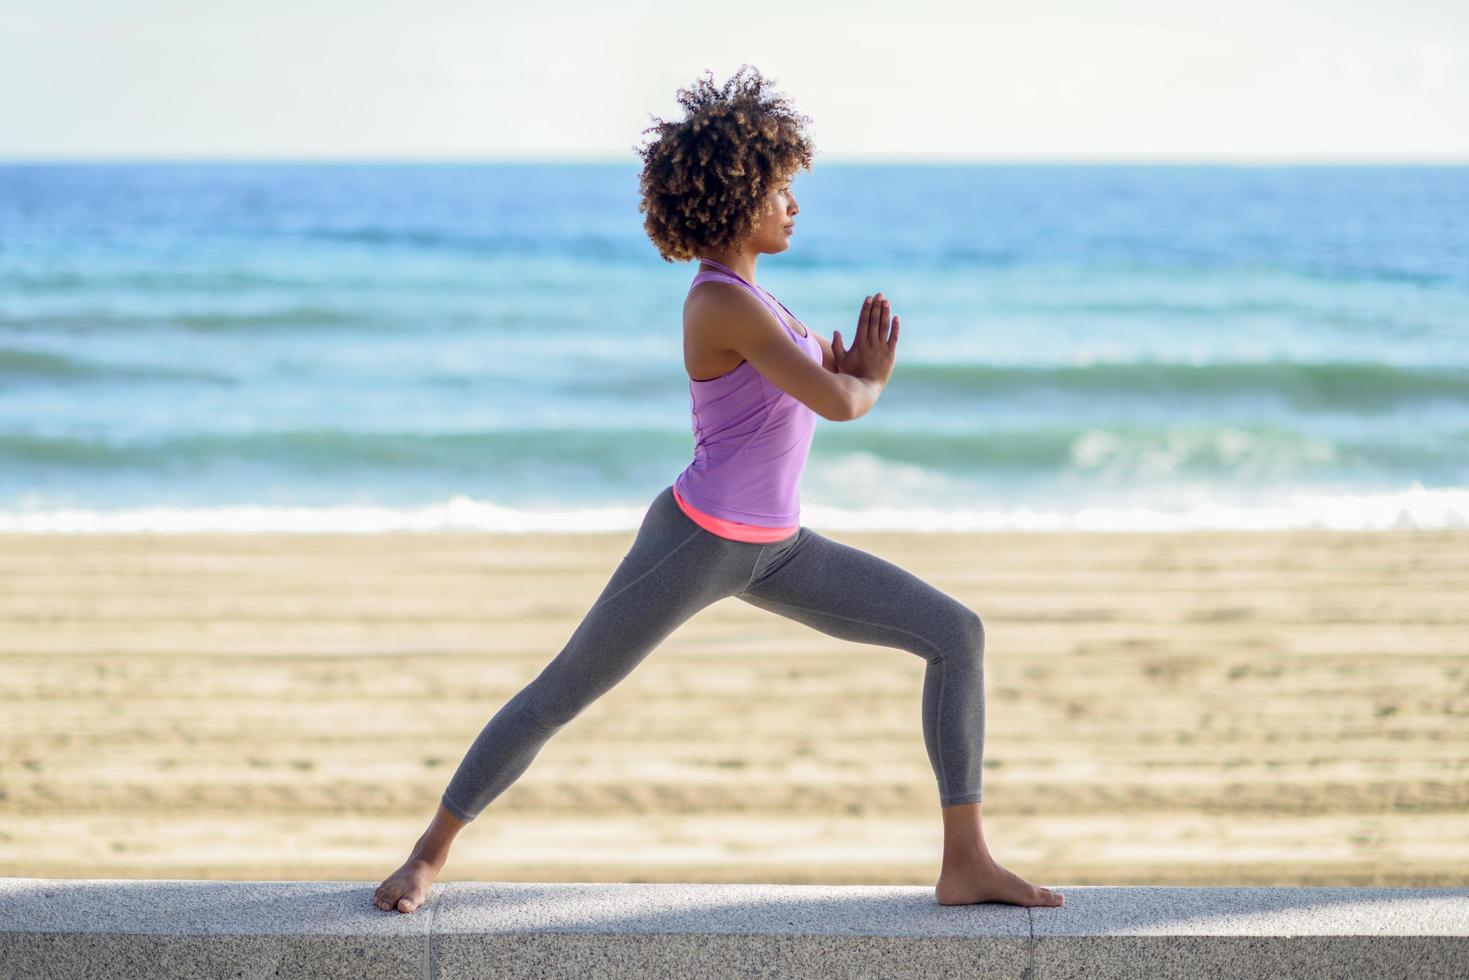 svart kvinna, afro frisyr, gör yoga i krigare asana på stranden foto